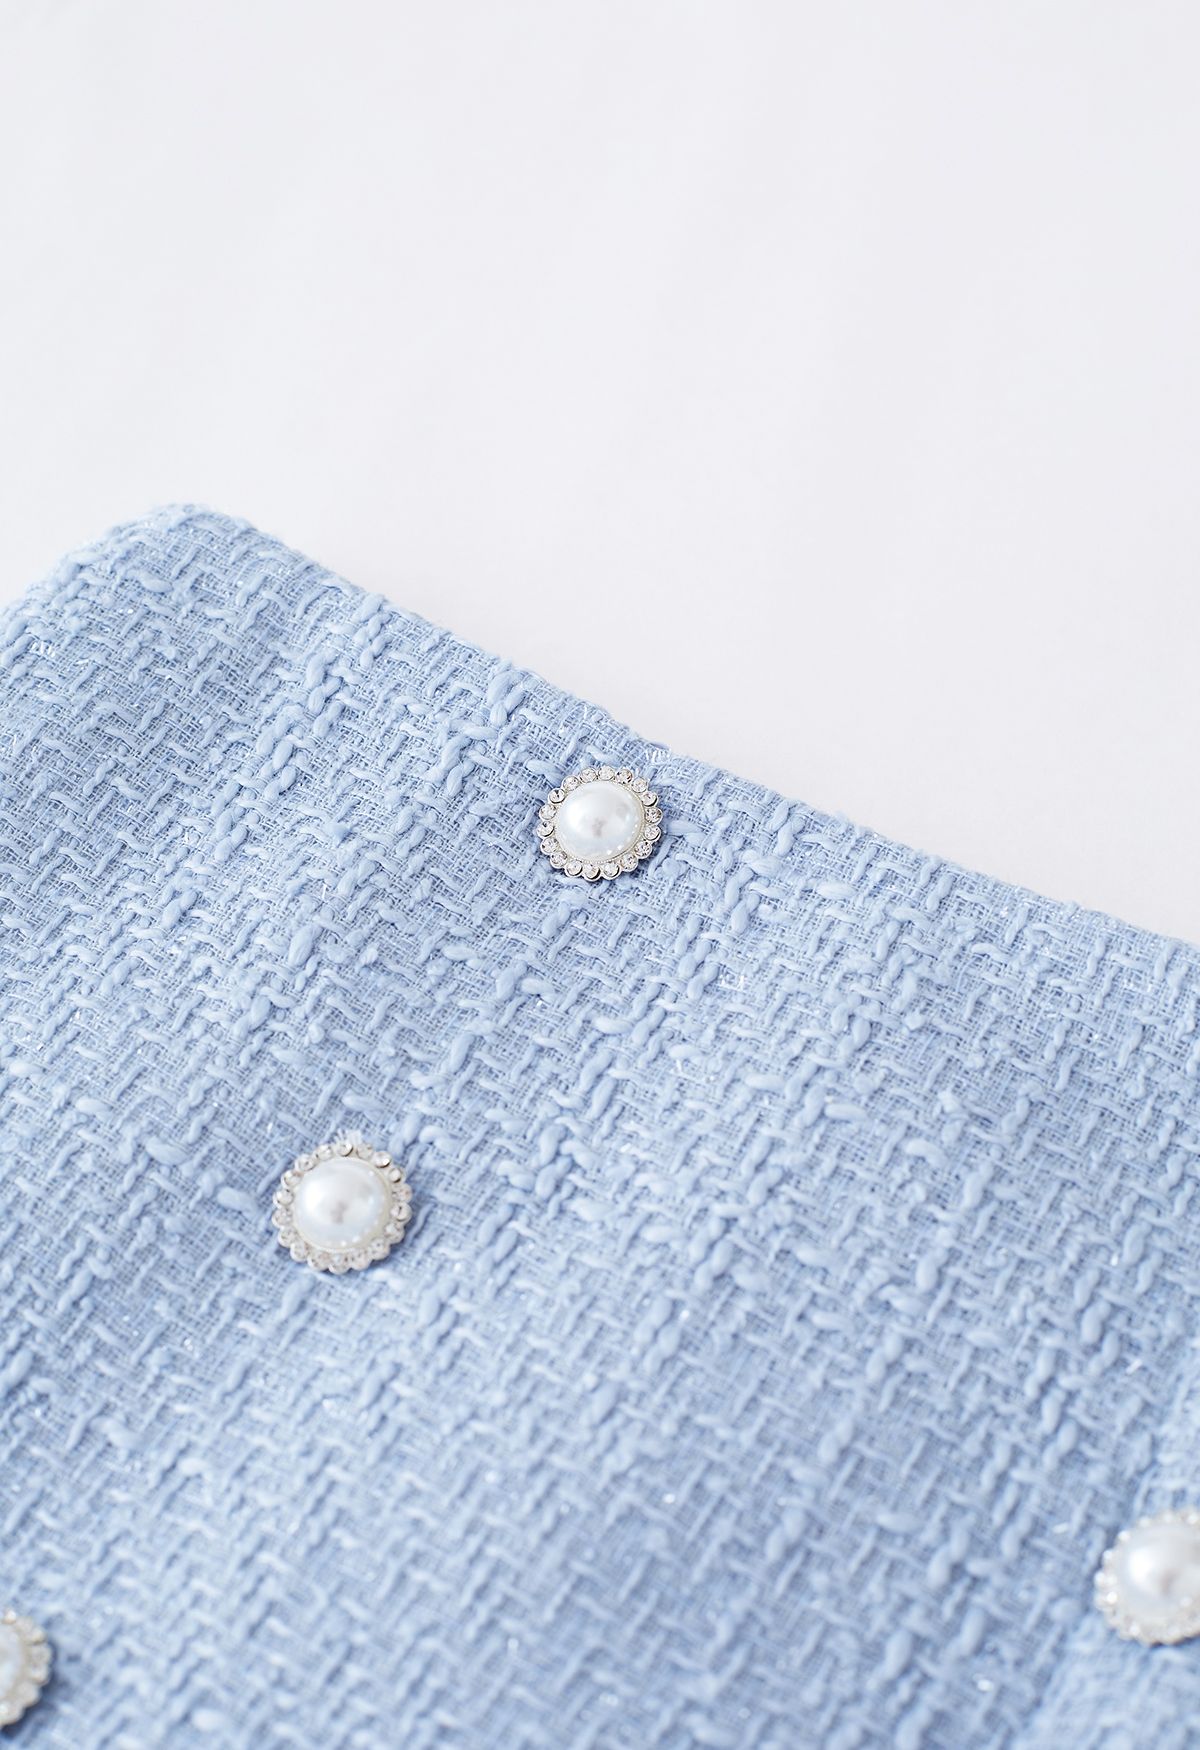 Zweireihiger, plissierter Tweed-Minirock in Blau